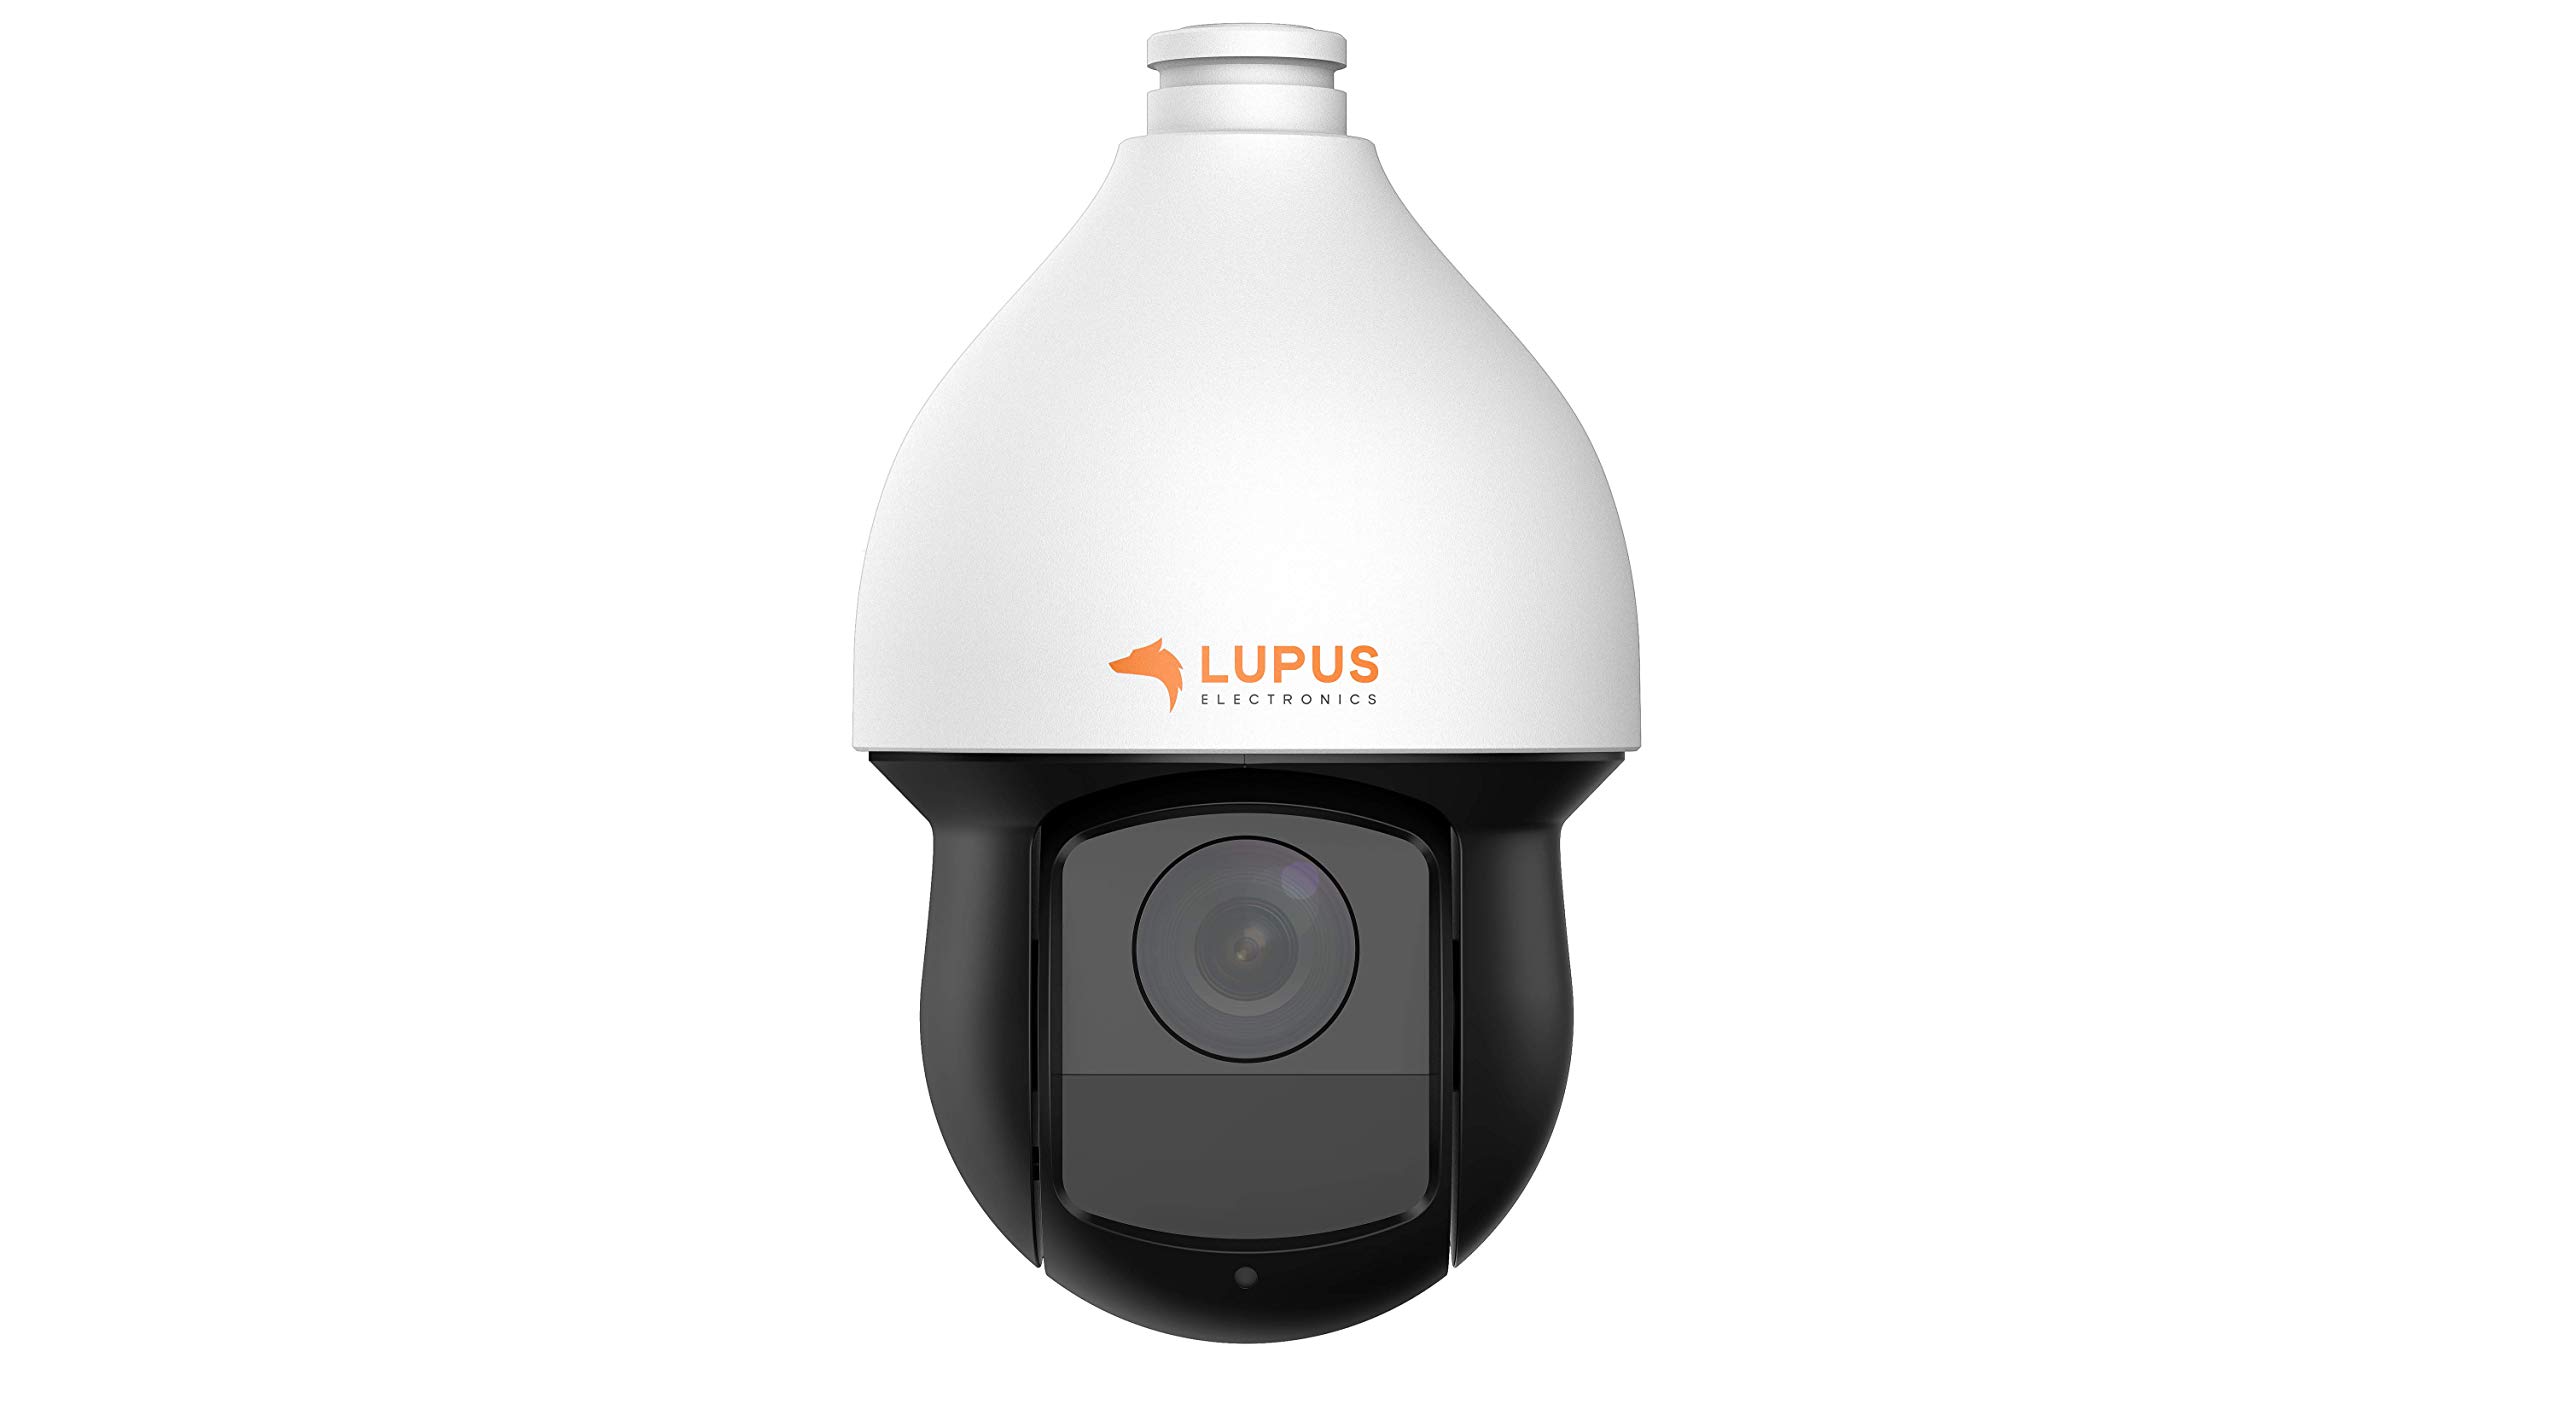 Lupus Electronics 4MP PoE Speeddome IP-Kamera für draußen, SD Slot, Nachtsicht, Personenverfolgung, iOS und Android App, dt. Hersteller und Support, 10281, Weiß